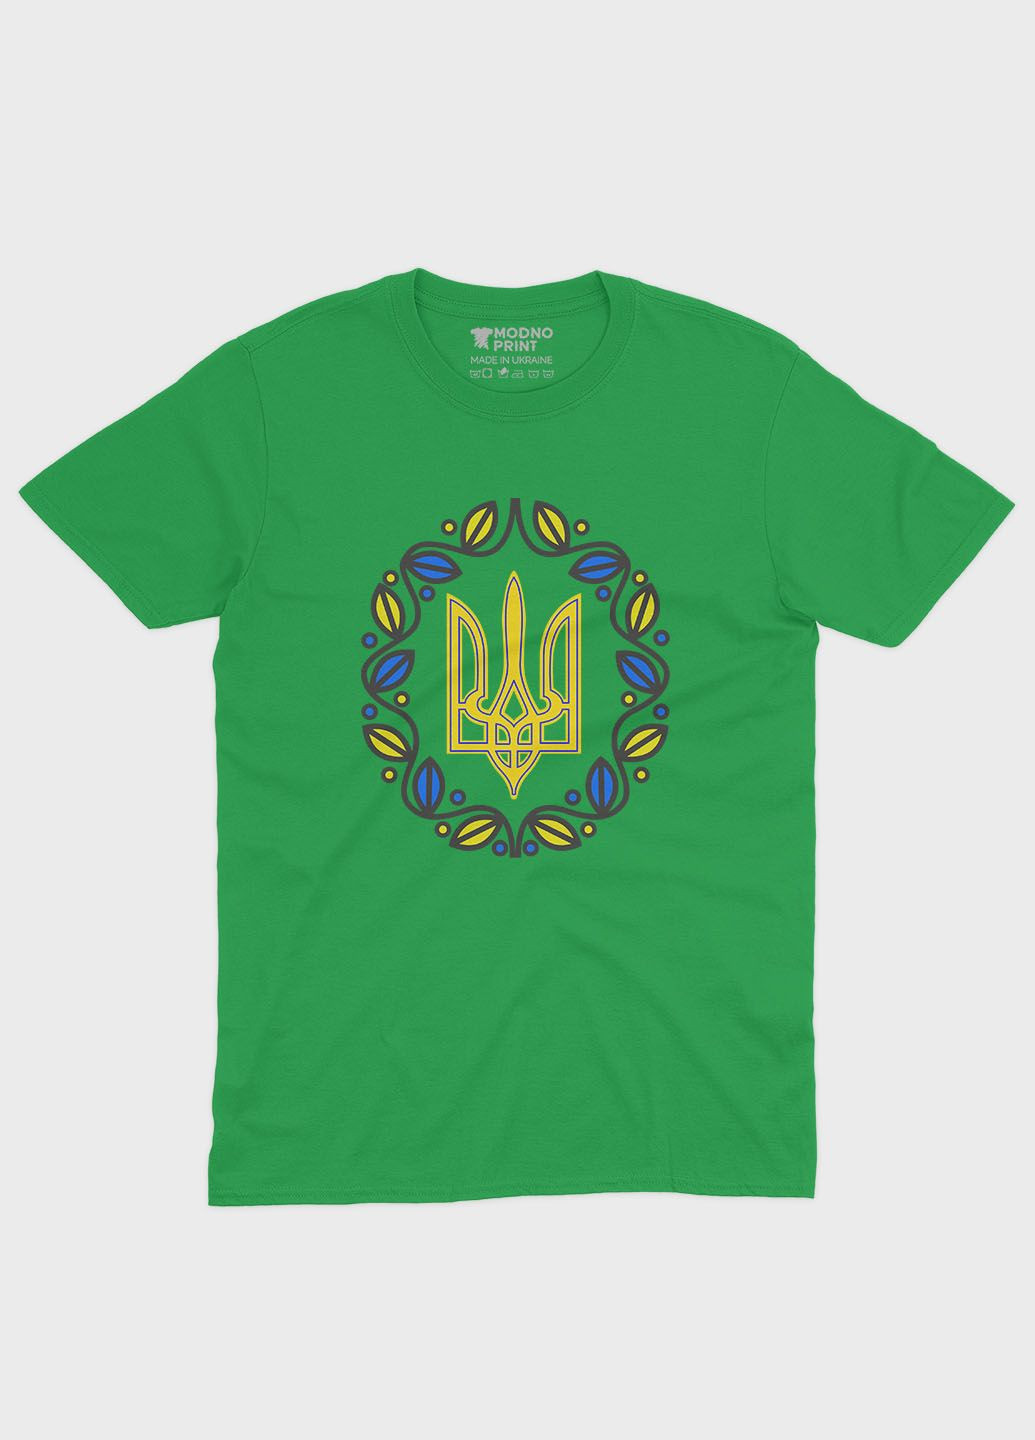 Зеленая демисезонная футболка для девочки с патриотическим принтом гербтризуб (ts001-2-keg-005-1-052-g) Modno